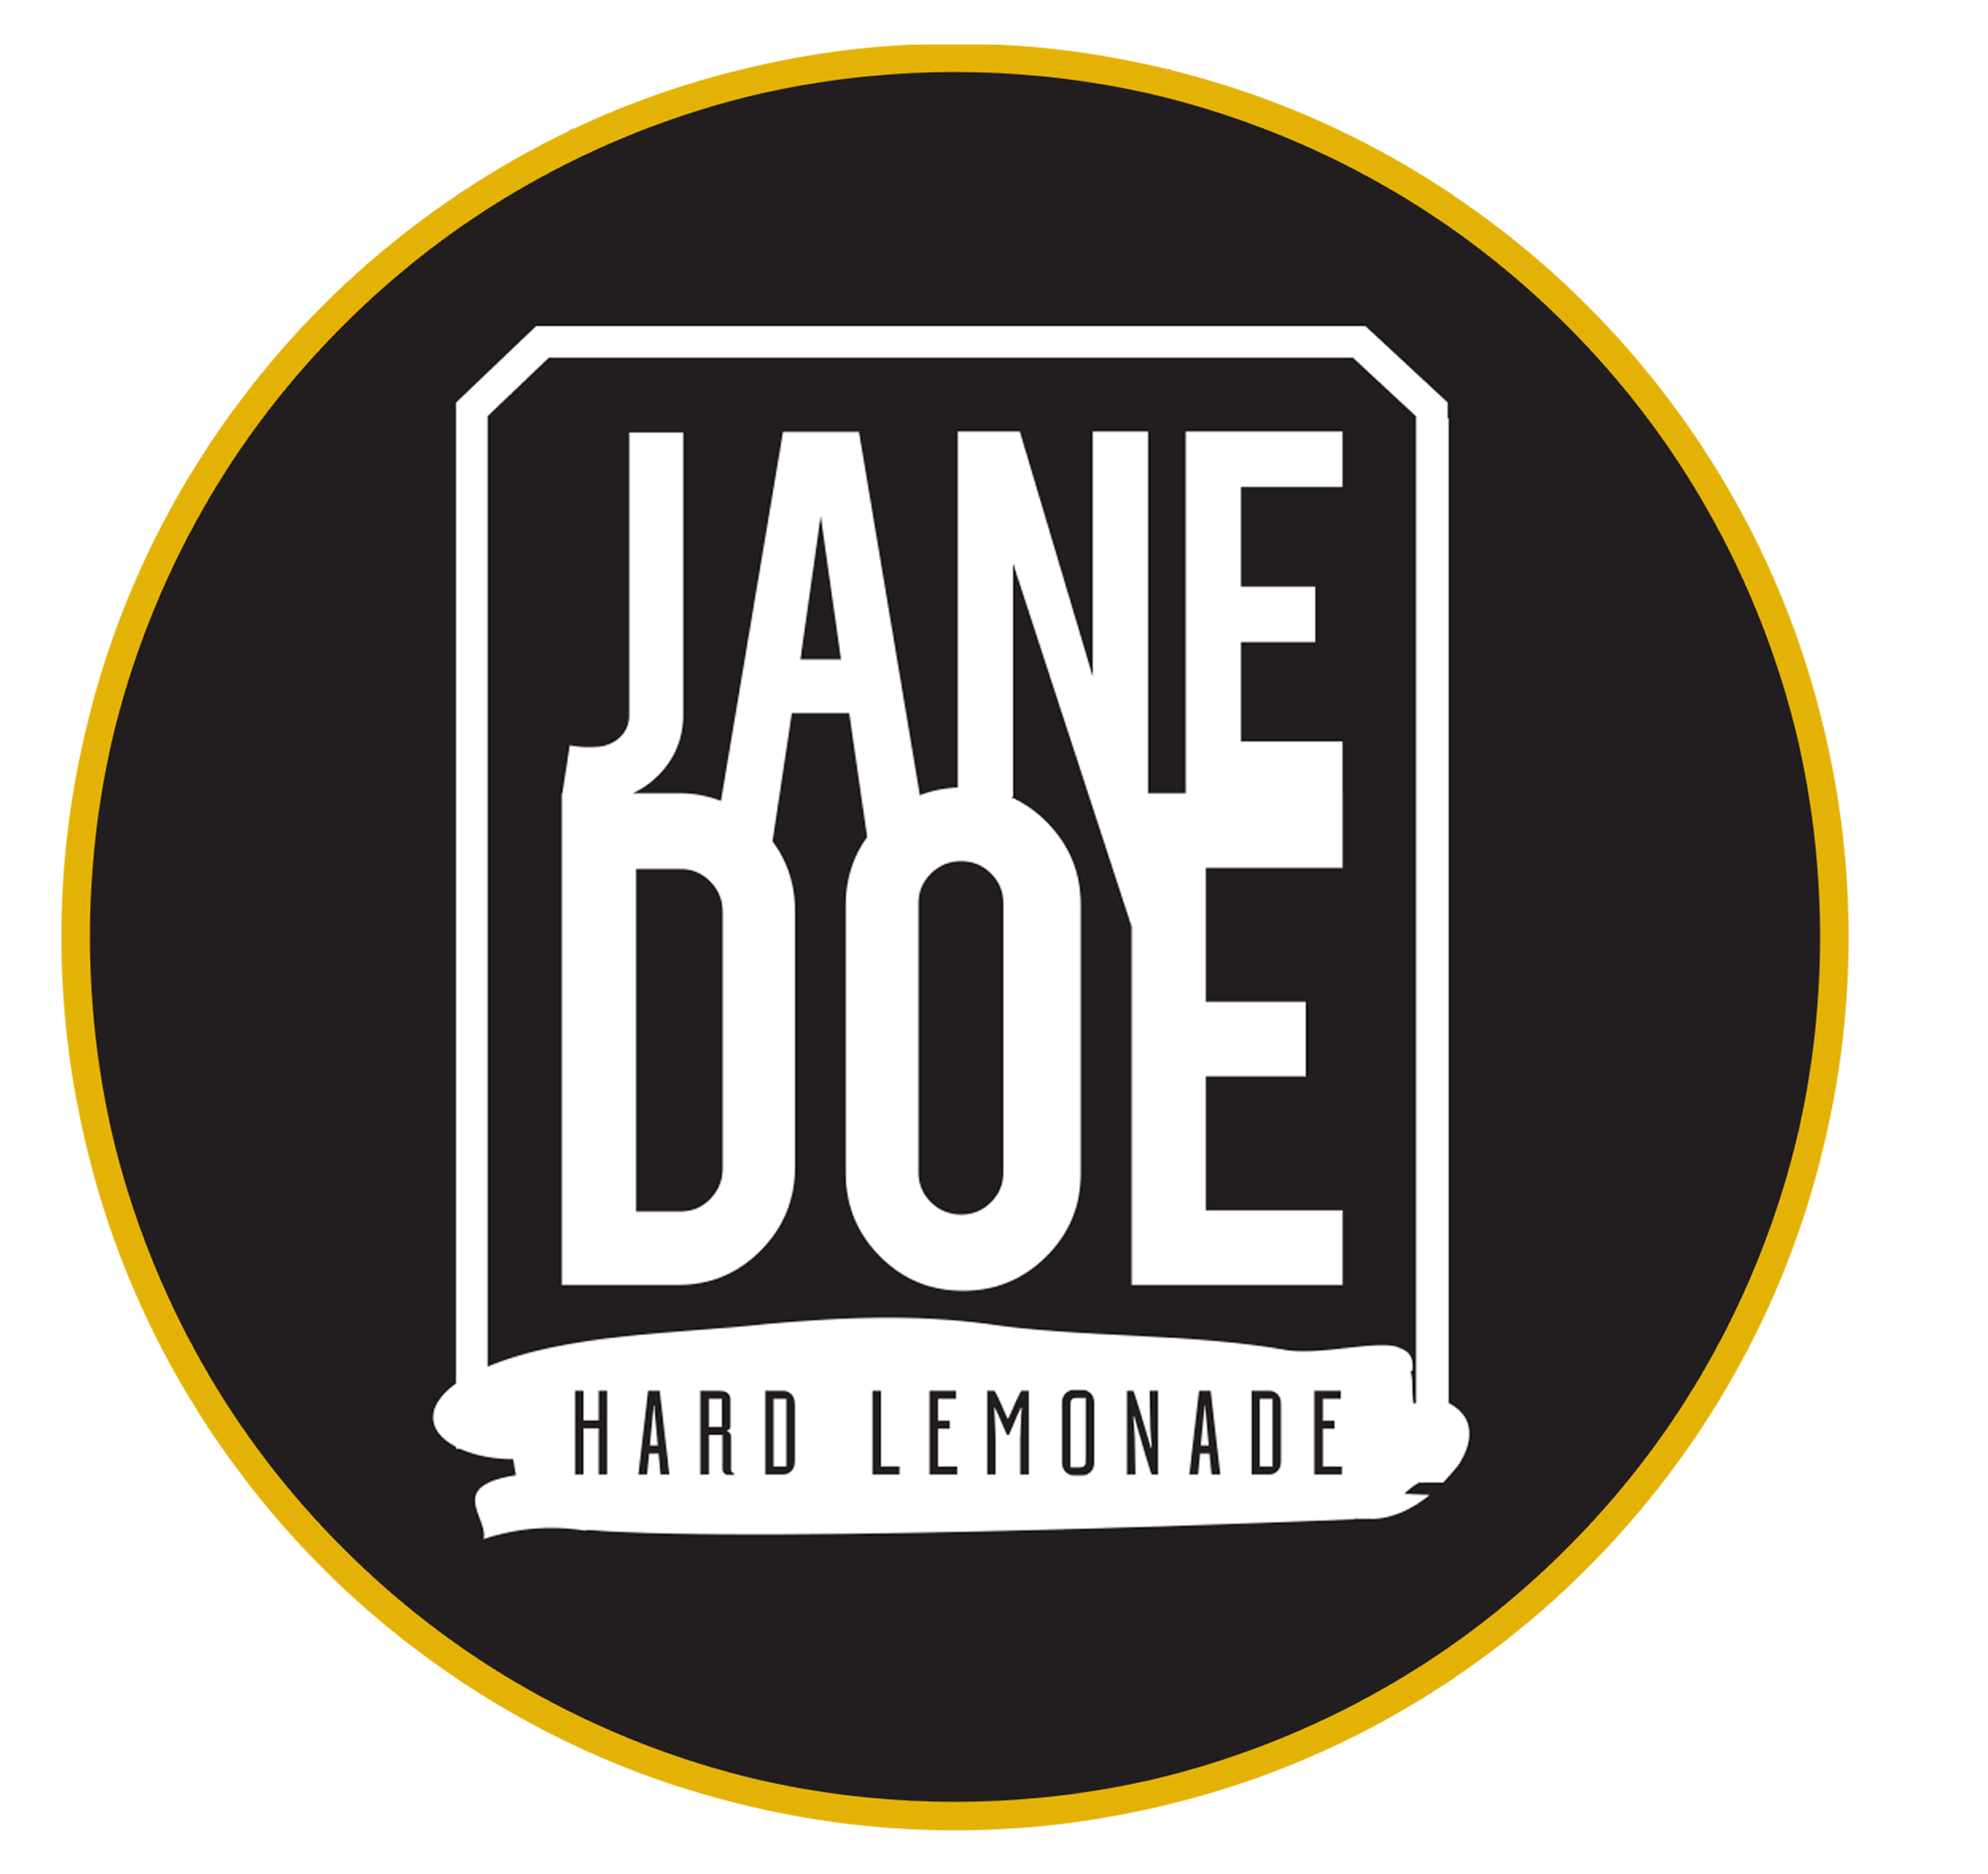 Jane Doe Hard Lemonade - 20L